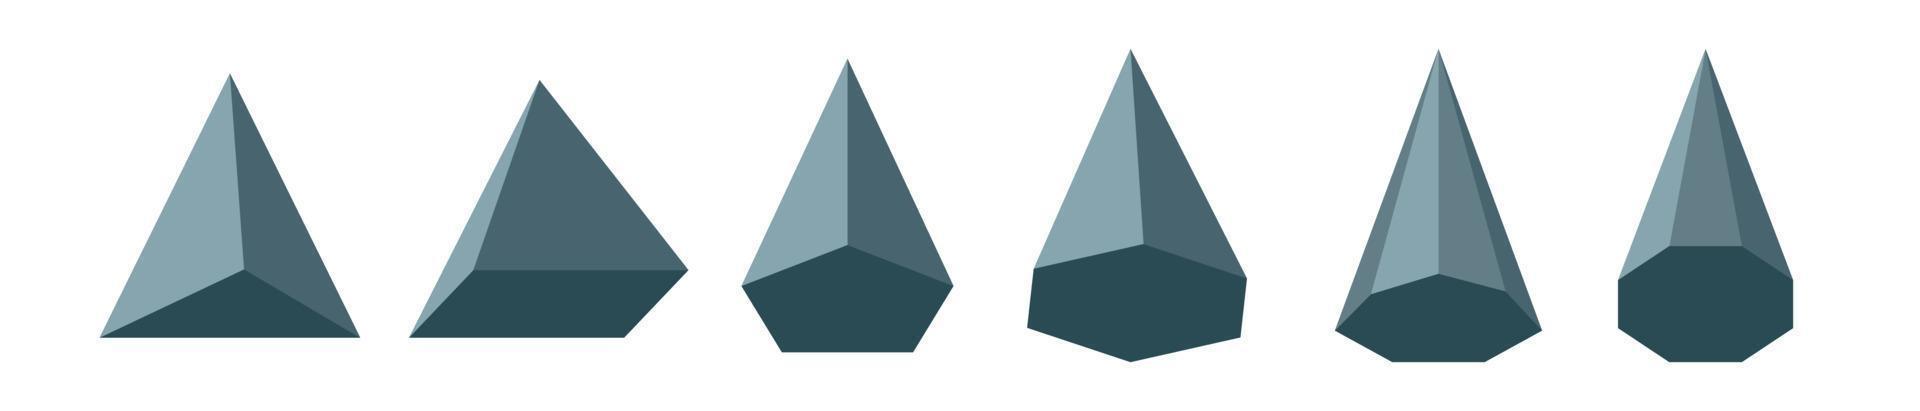 tipi piramidali impostati. figure geometriche matematiche. poliedro.triangolare rettangolare pentagonale esagonale eptagonale ottagonale piramide poligonale. illustrazione vettoriale